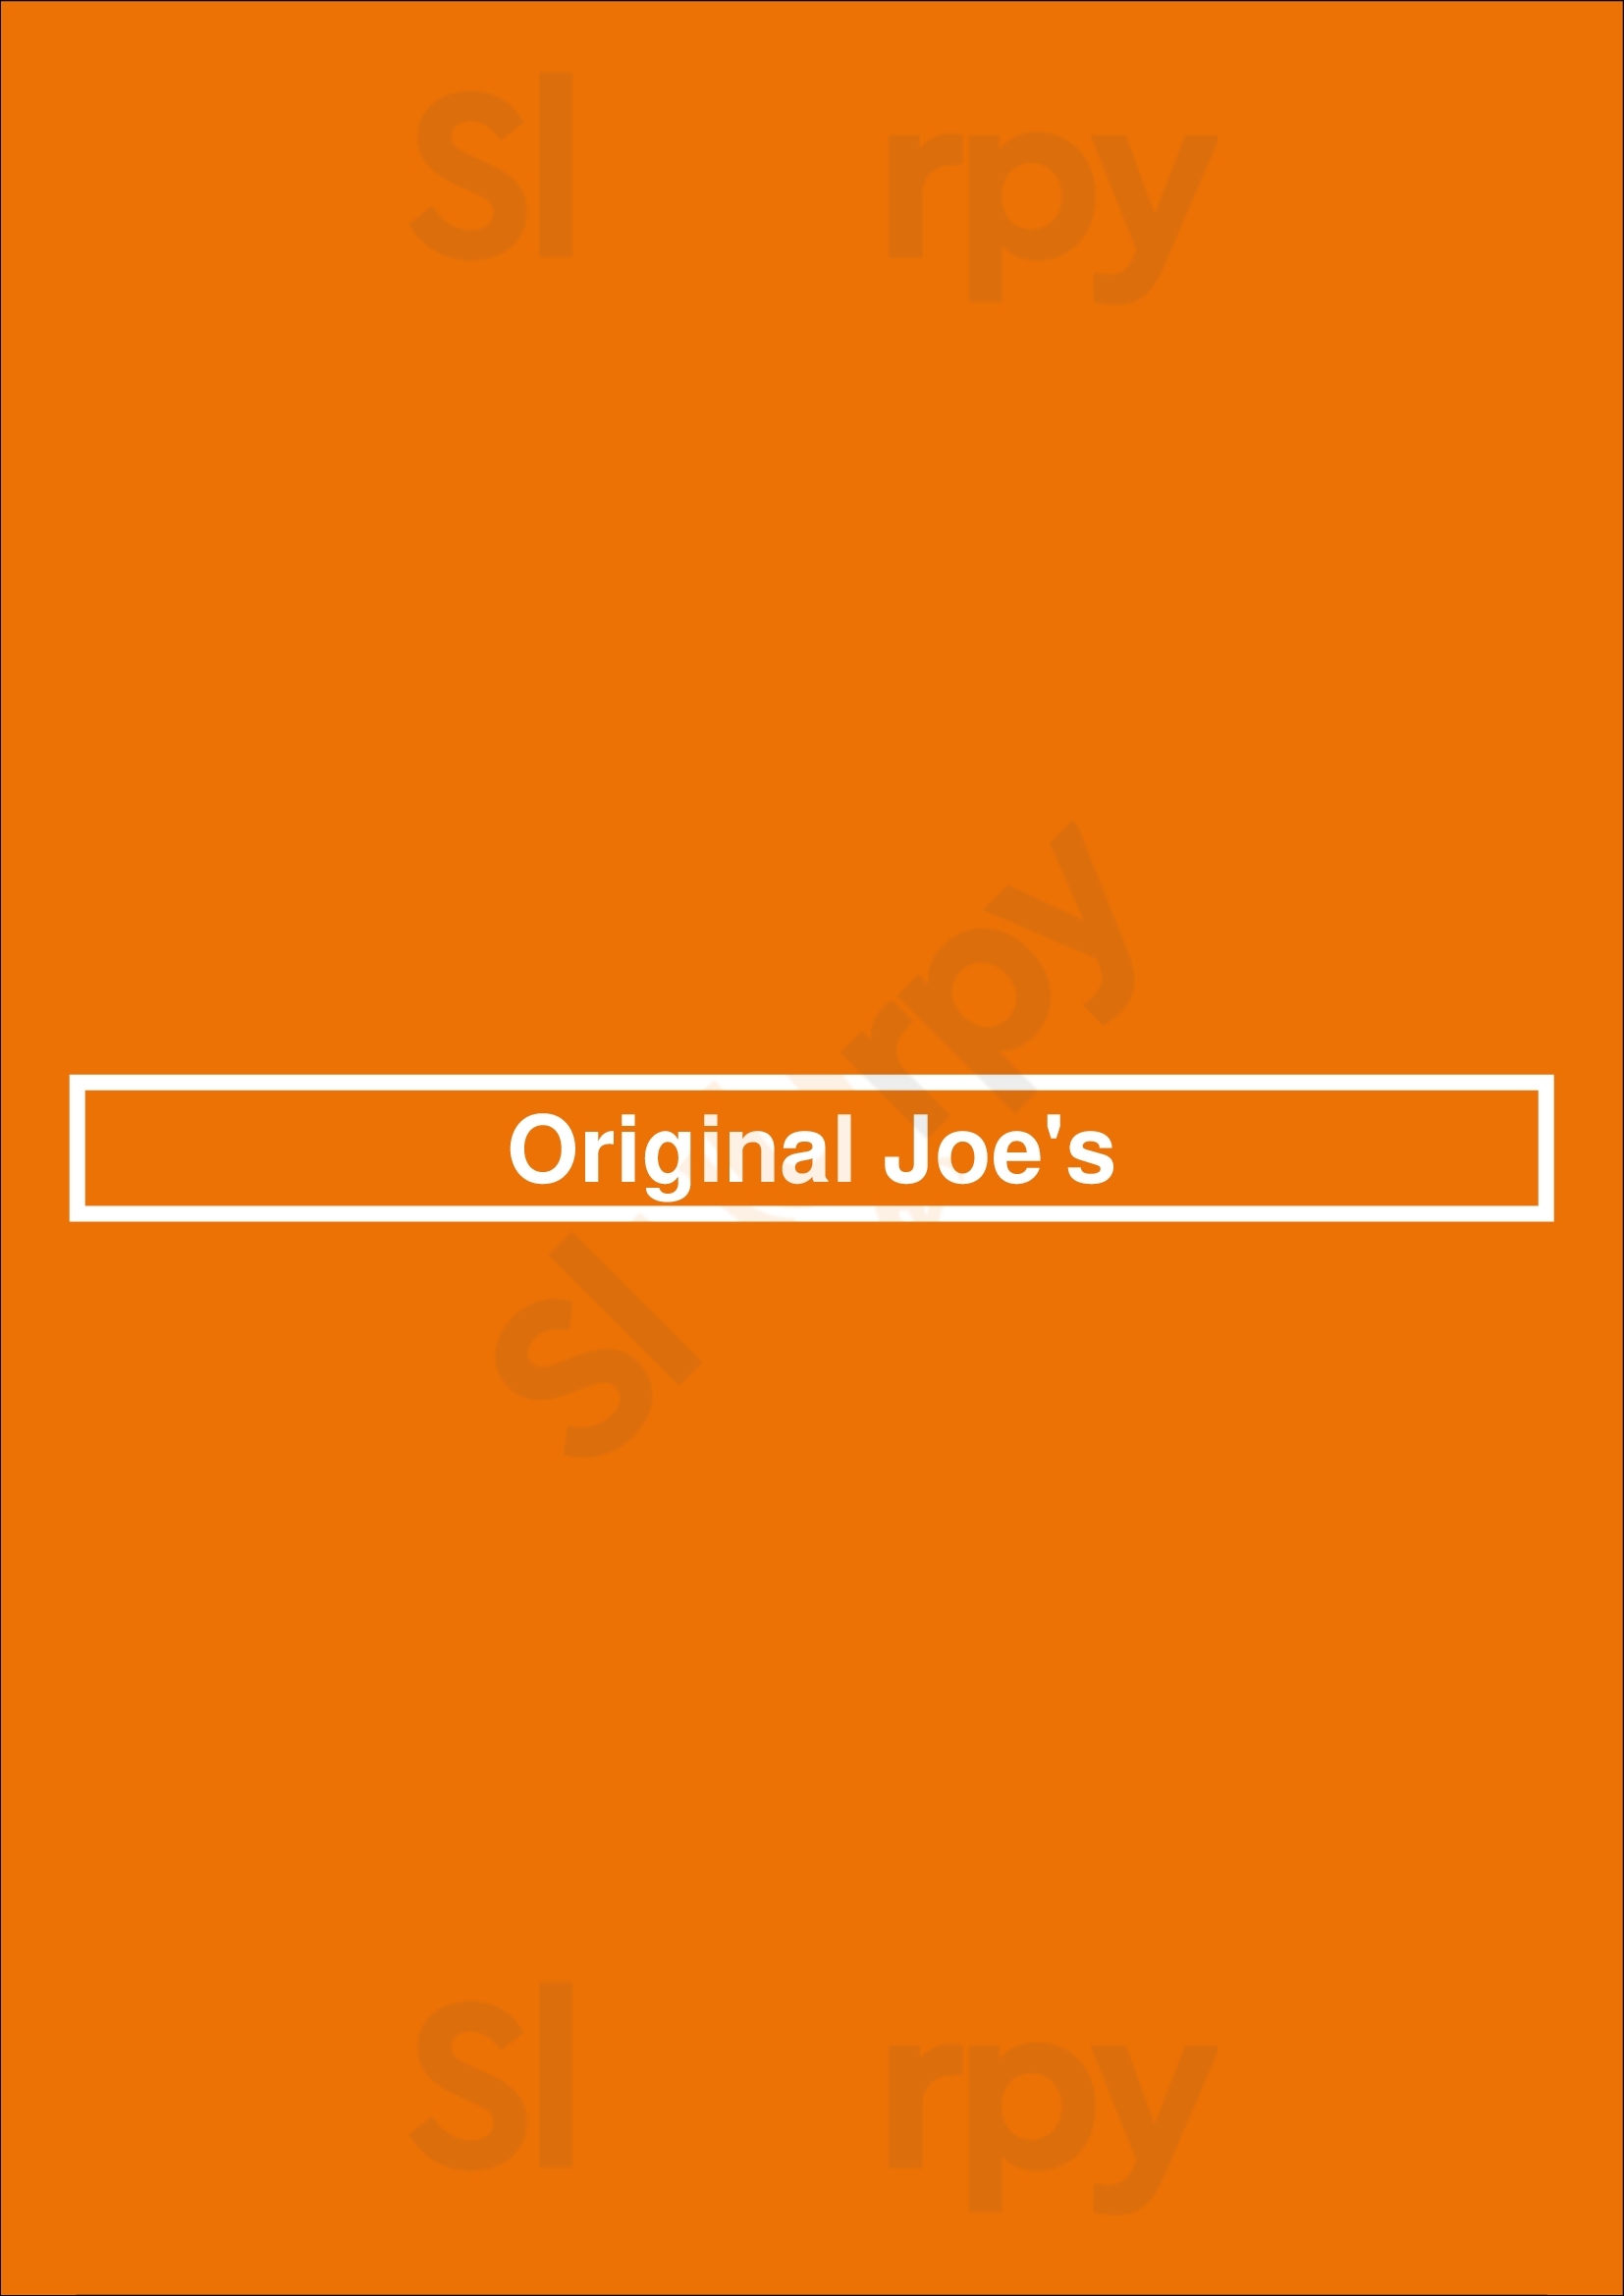 Original Joe's Red Deer Menu - 1